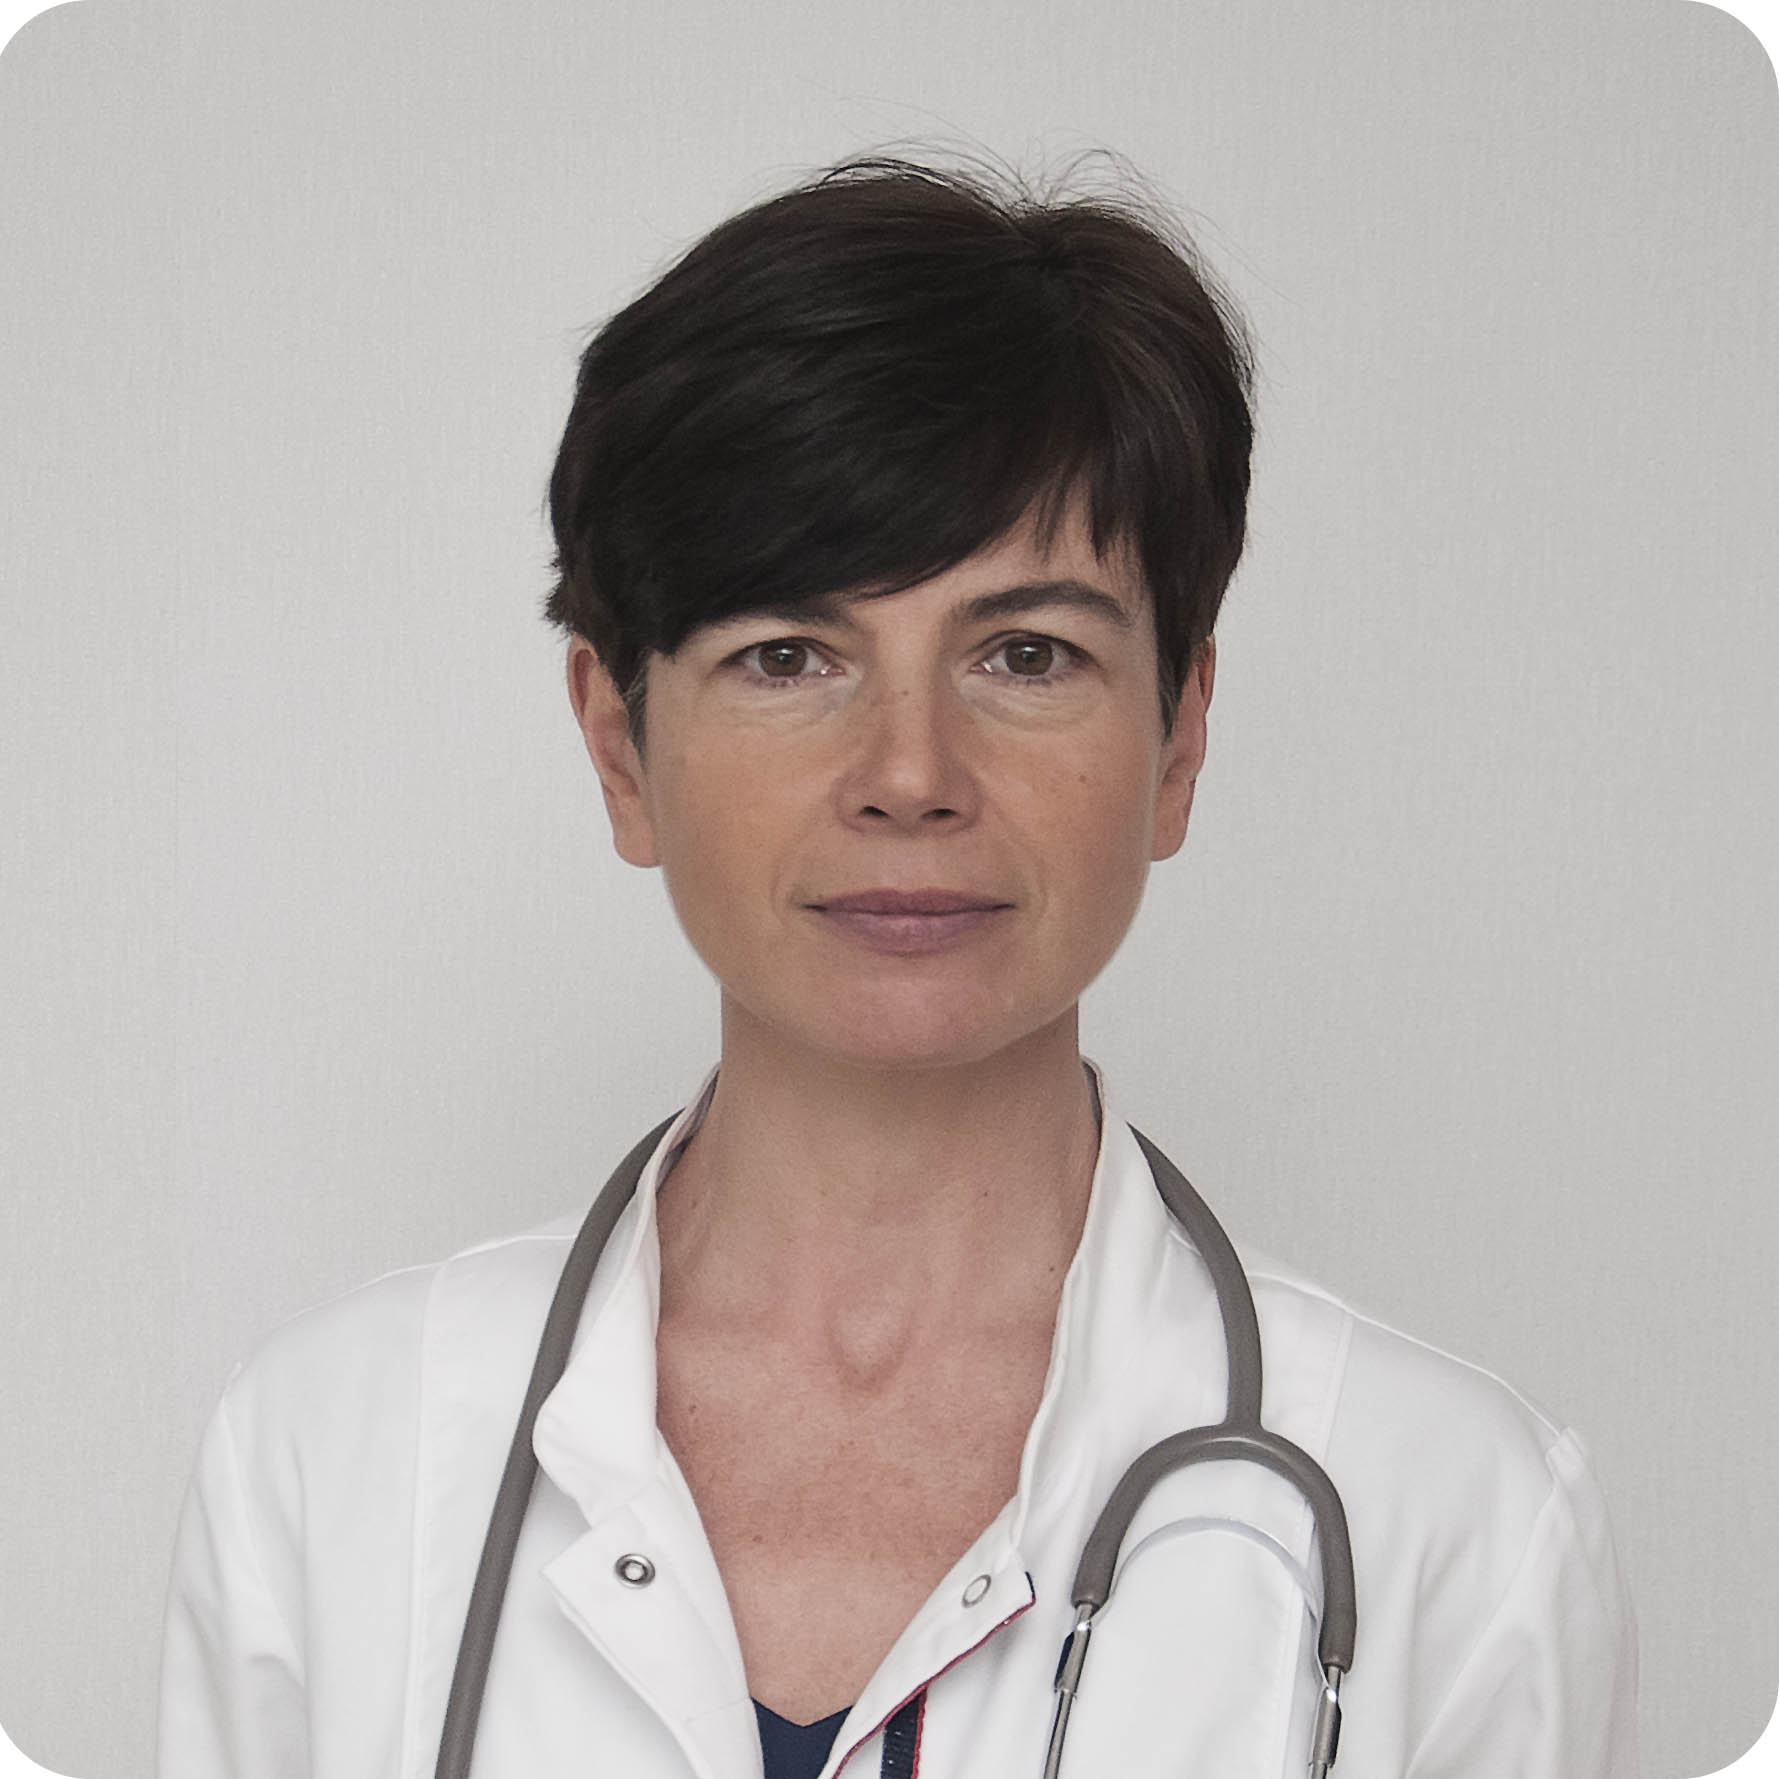 Dr N Med Katarzyna Derc Polecany Endokrynolog Poznań Umów Wizytę Na Abczdrowiepl 2698